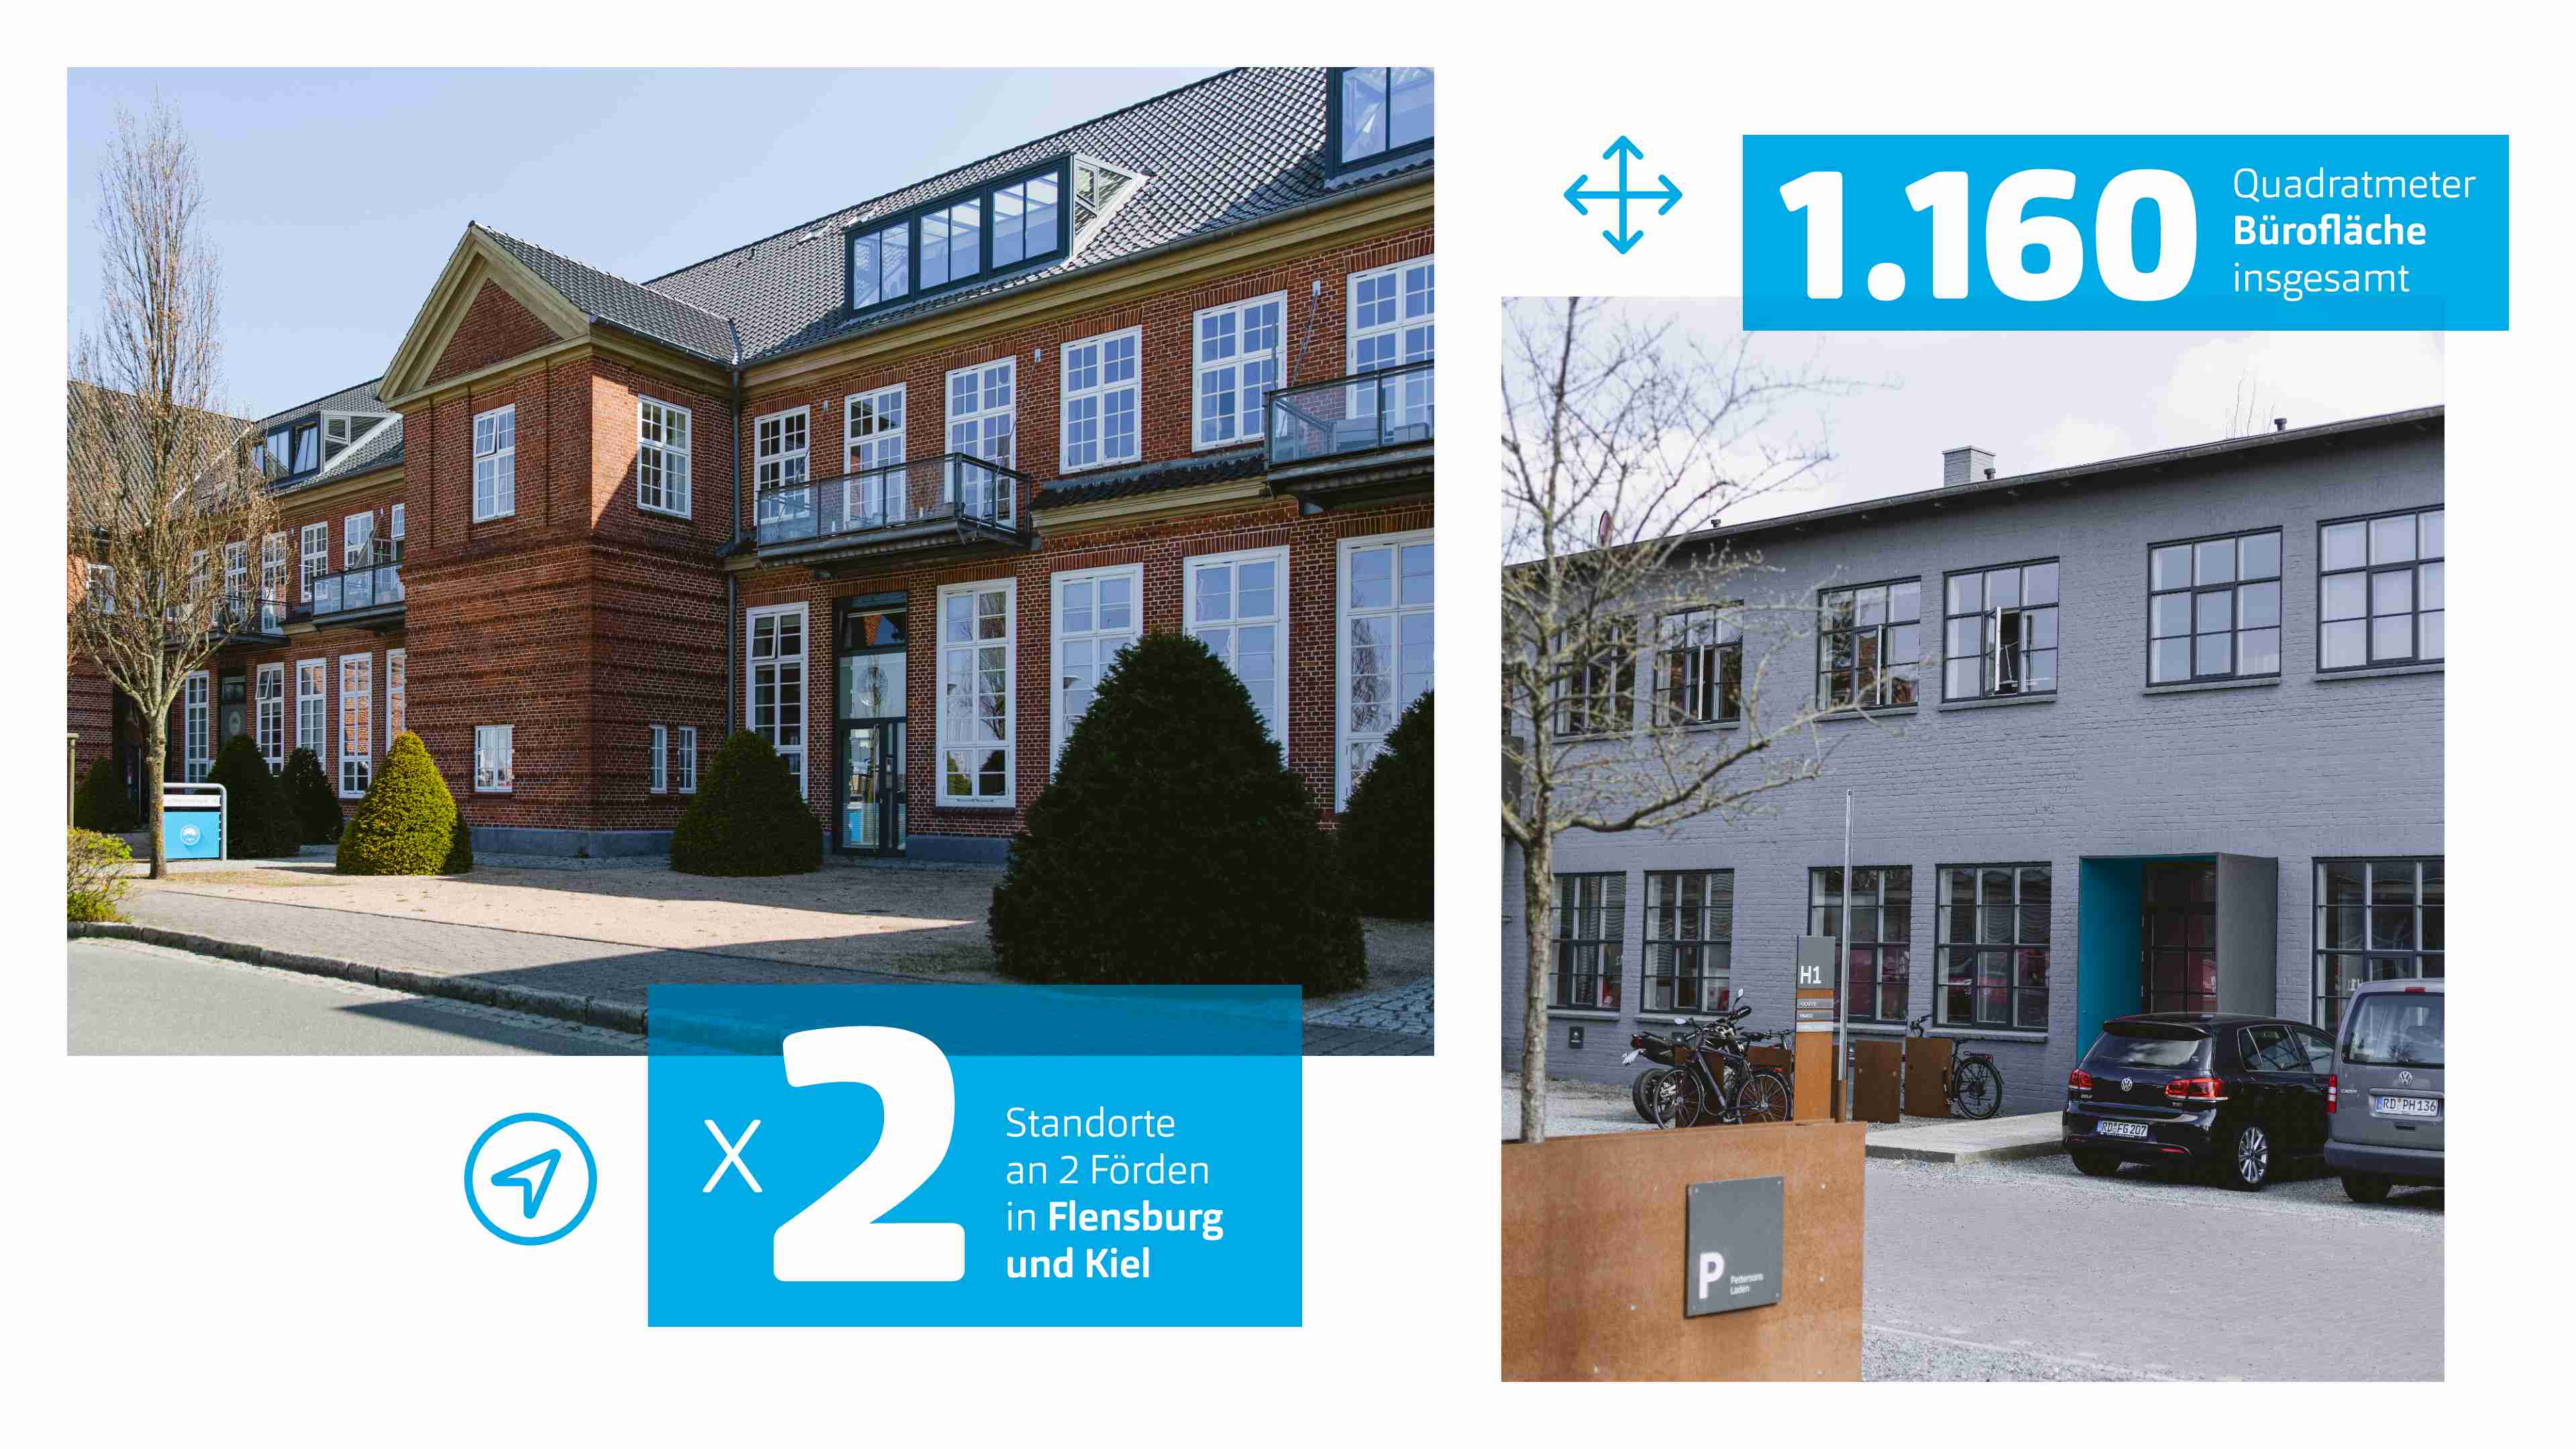 2 Standorte an 2 Förden in Kiel und Flensburg, 1.160 qm2 Bürofläche insgesamt